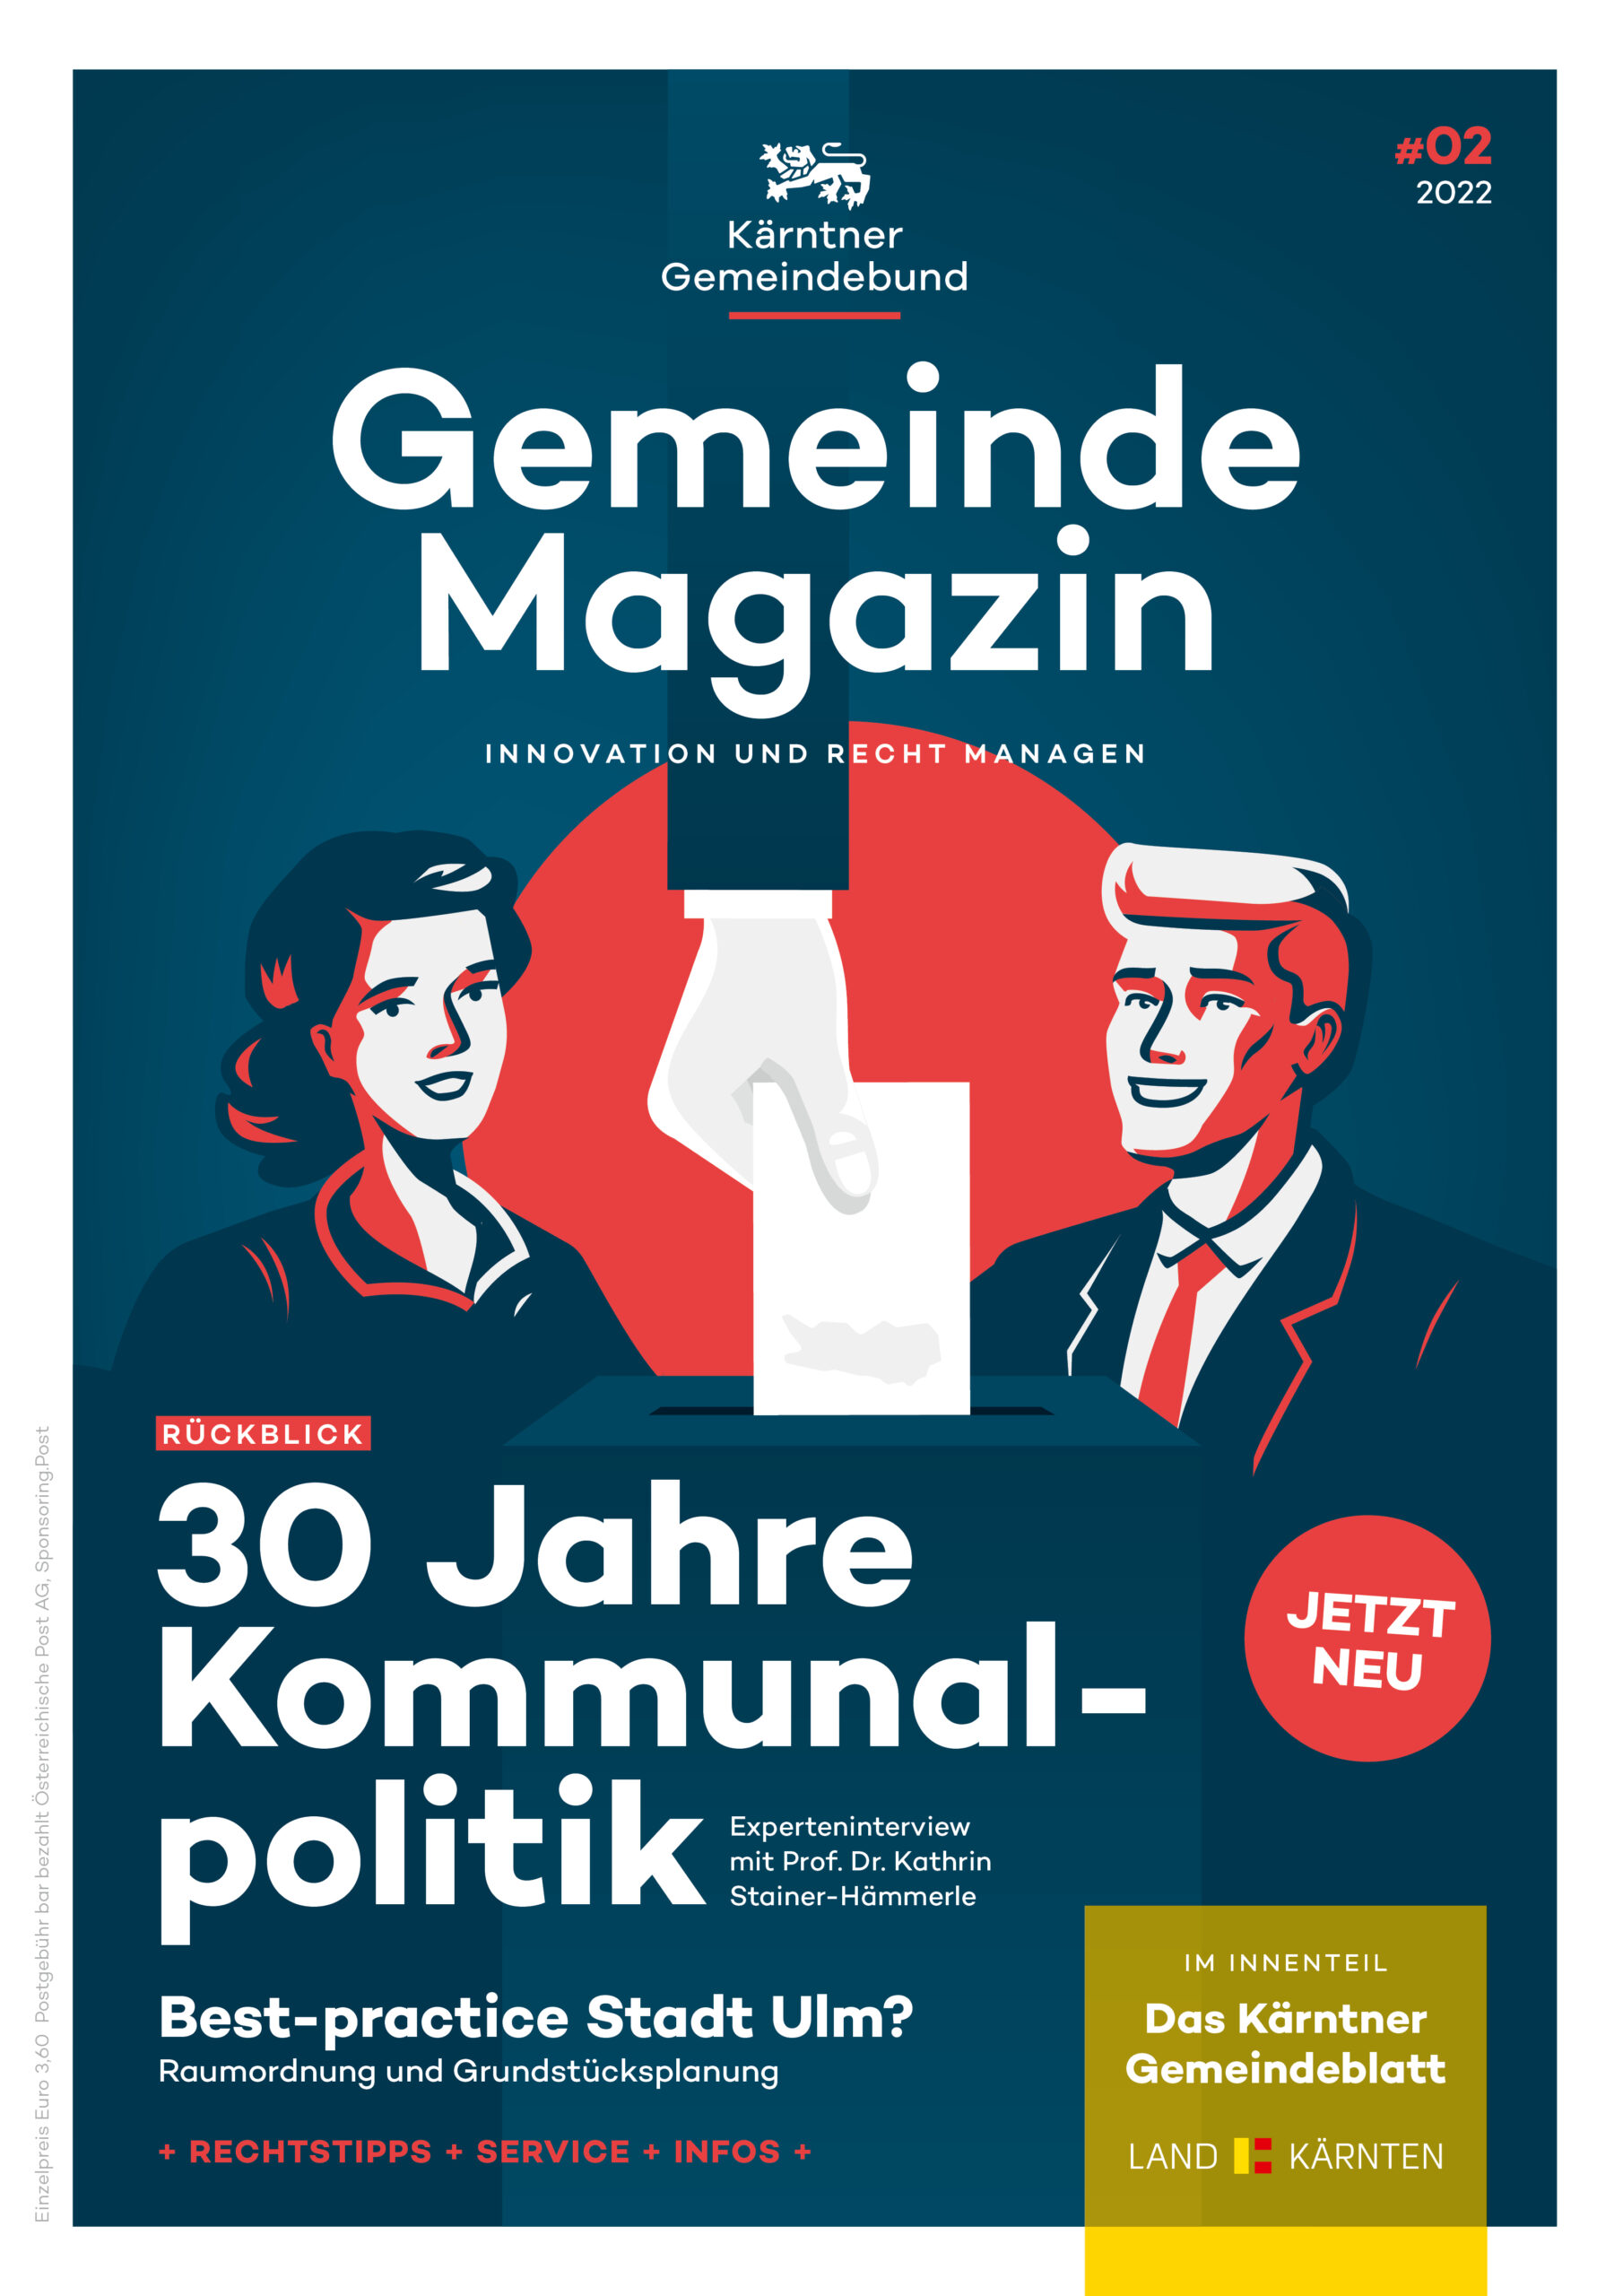 Kärntner Gemeindebund Gemeindemagazin Ausgabe 02 von 2022 zum Thema 30 Jahre Kommunalpolitik